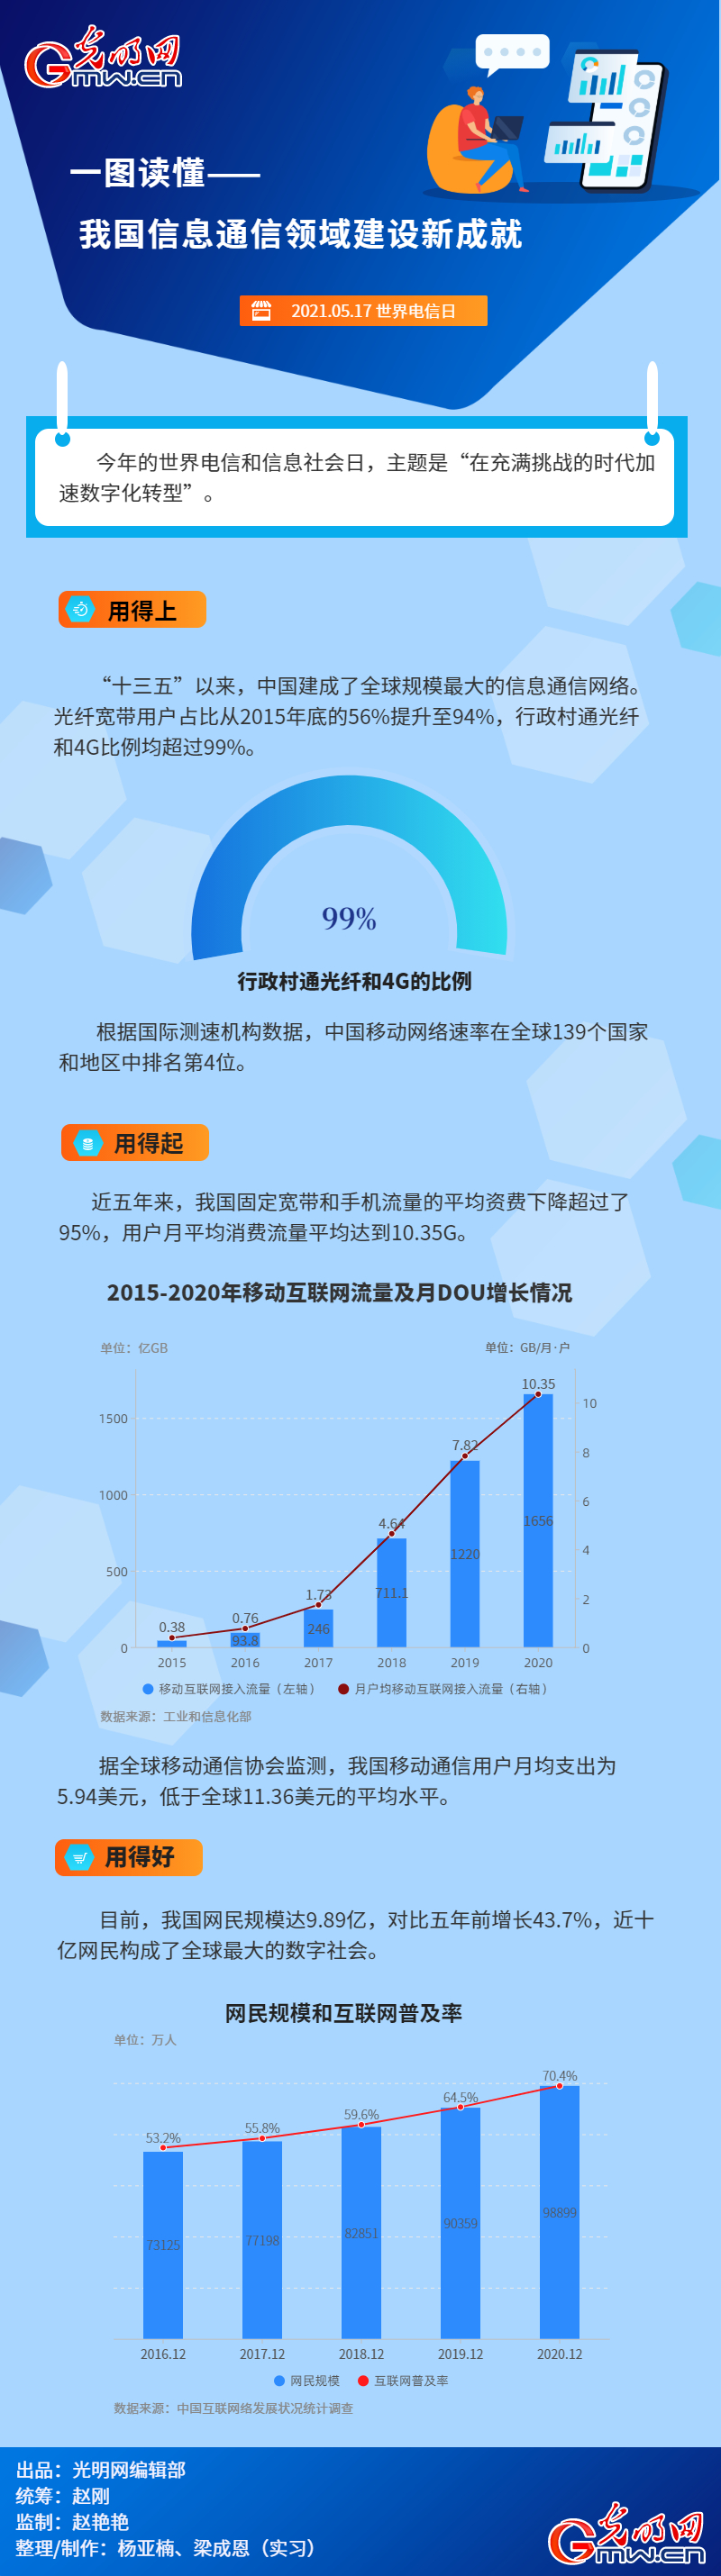 澳门·新葡澳京(中国)官方网站一图读懂 我国信息通讯领域建设新成就(图1)